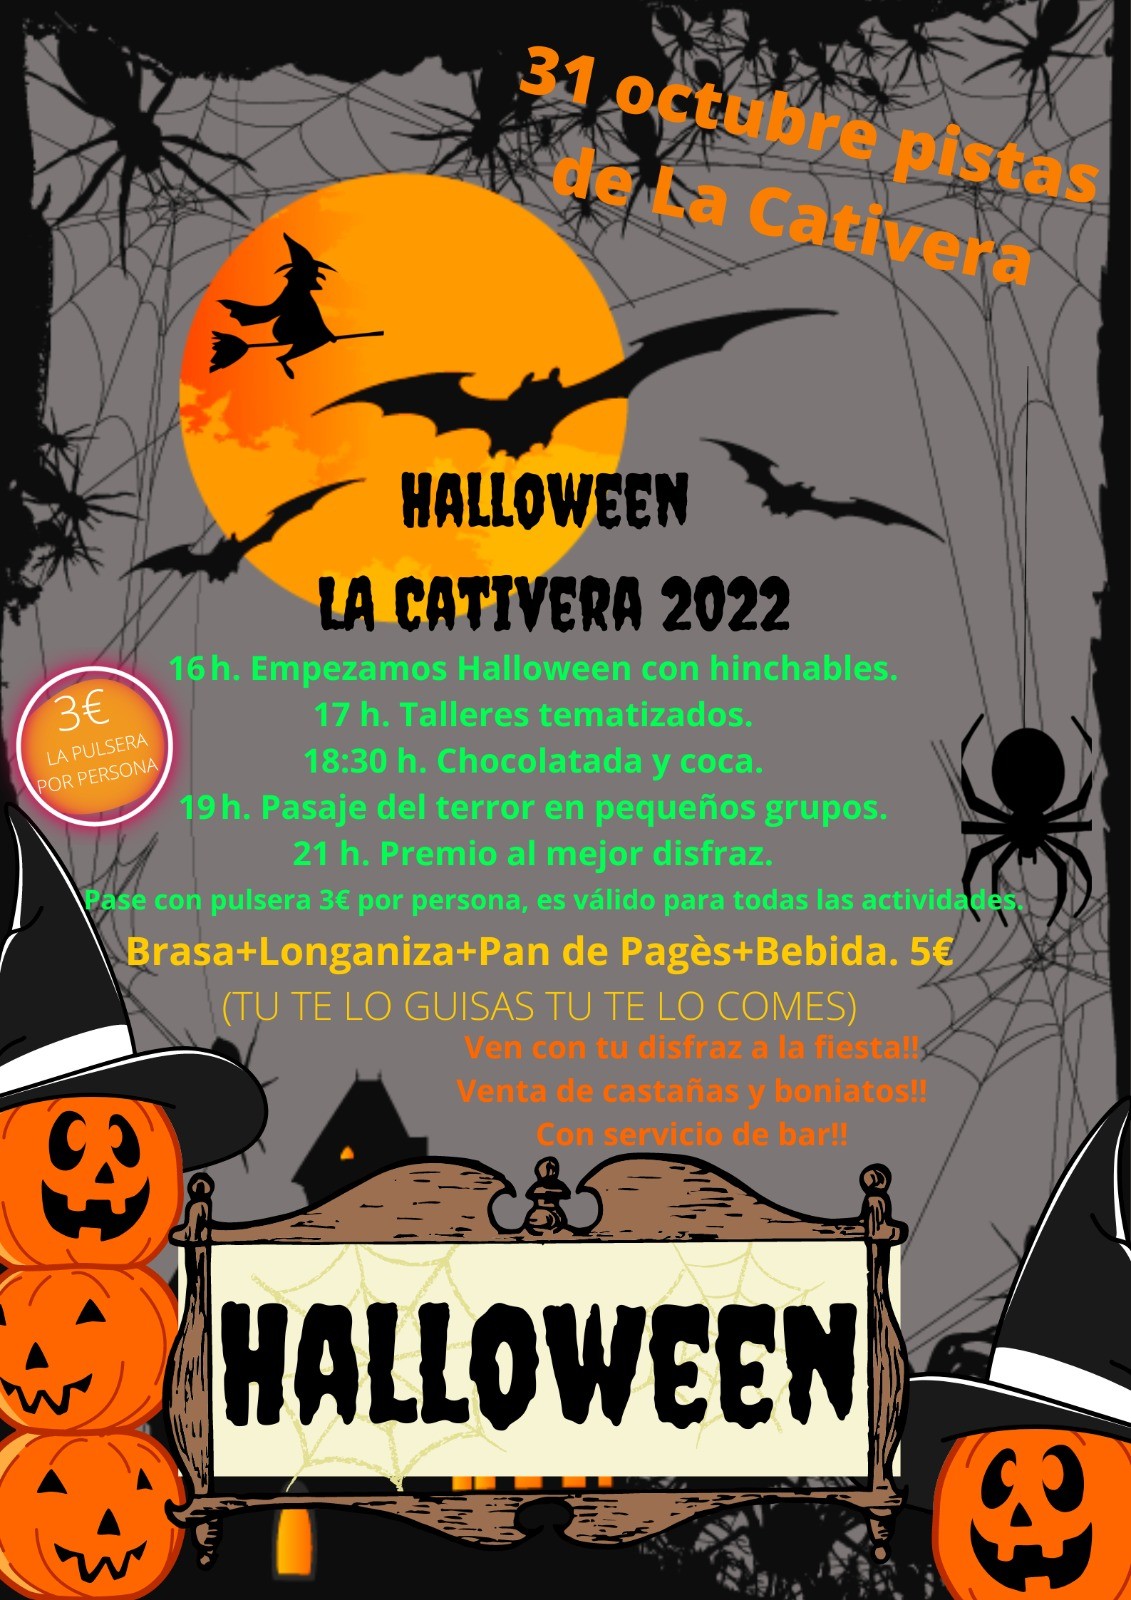 LA CATIVERA. 31 DE OCTUBRE DE 2022